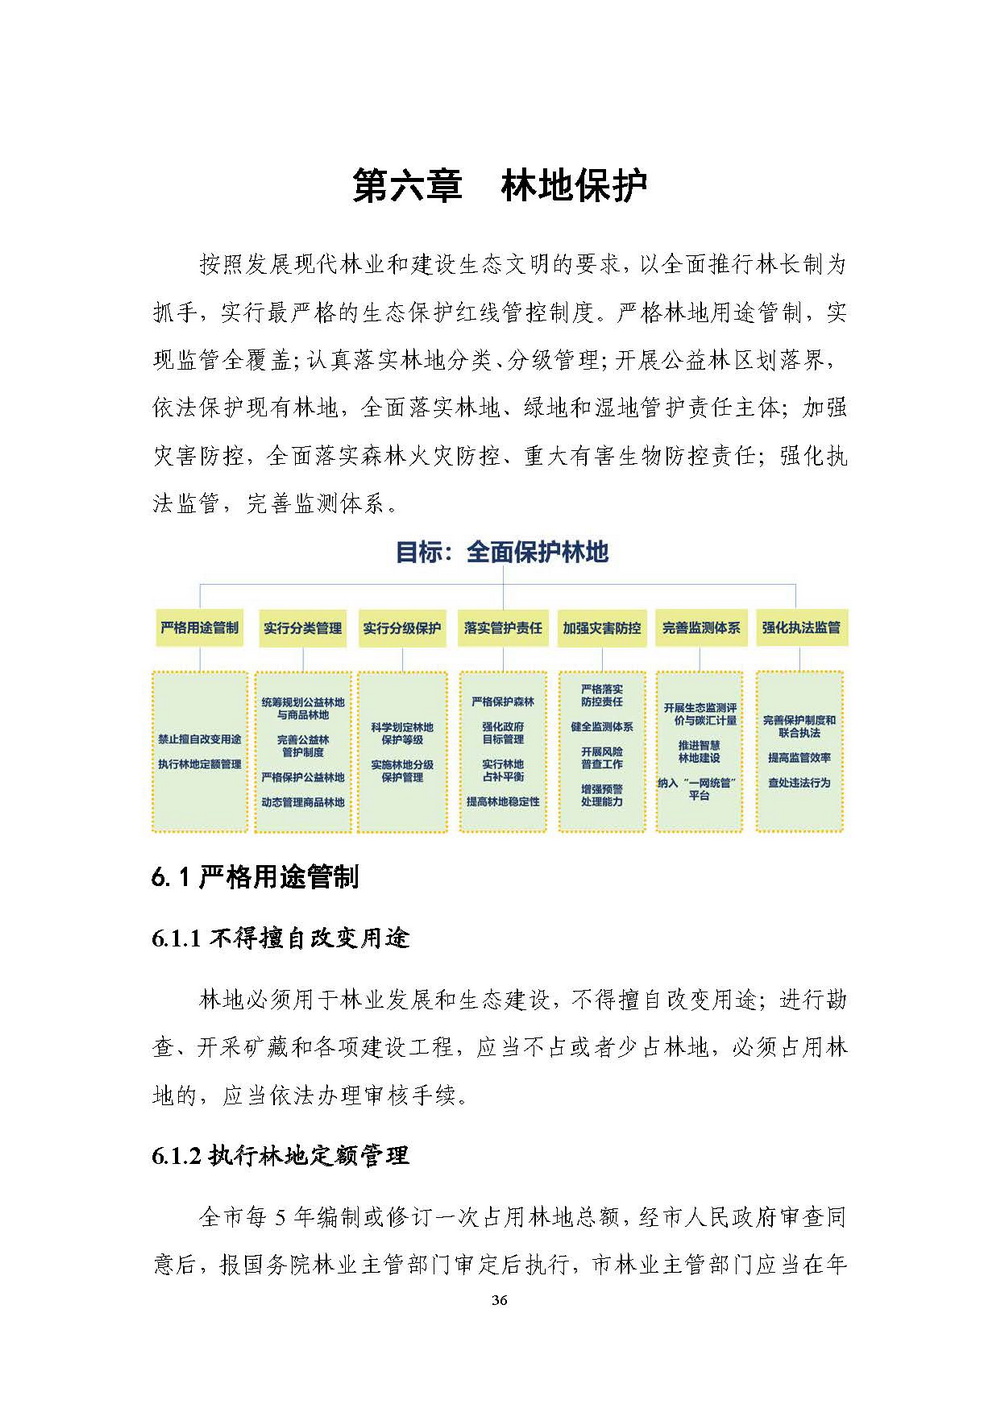 上海市森林和林地保护利用规划文本 公开稿 附图_页面_39.jpg